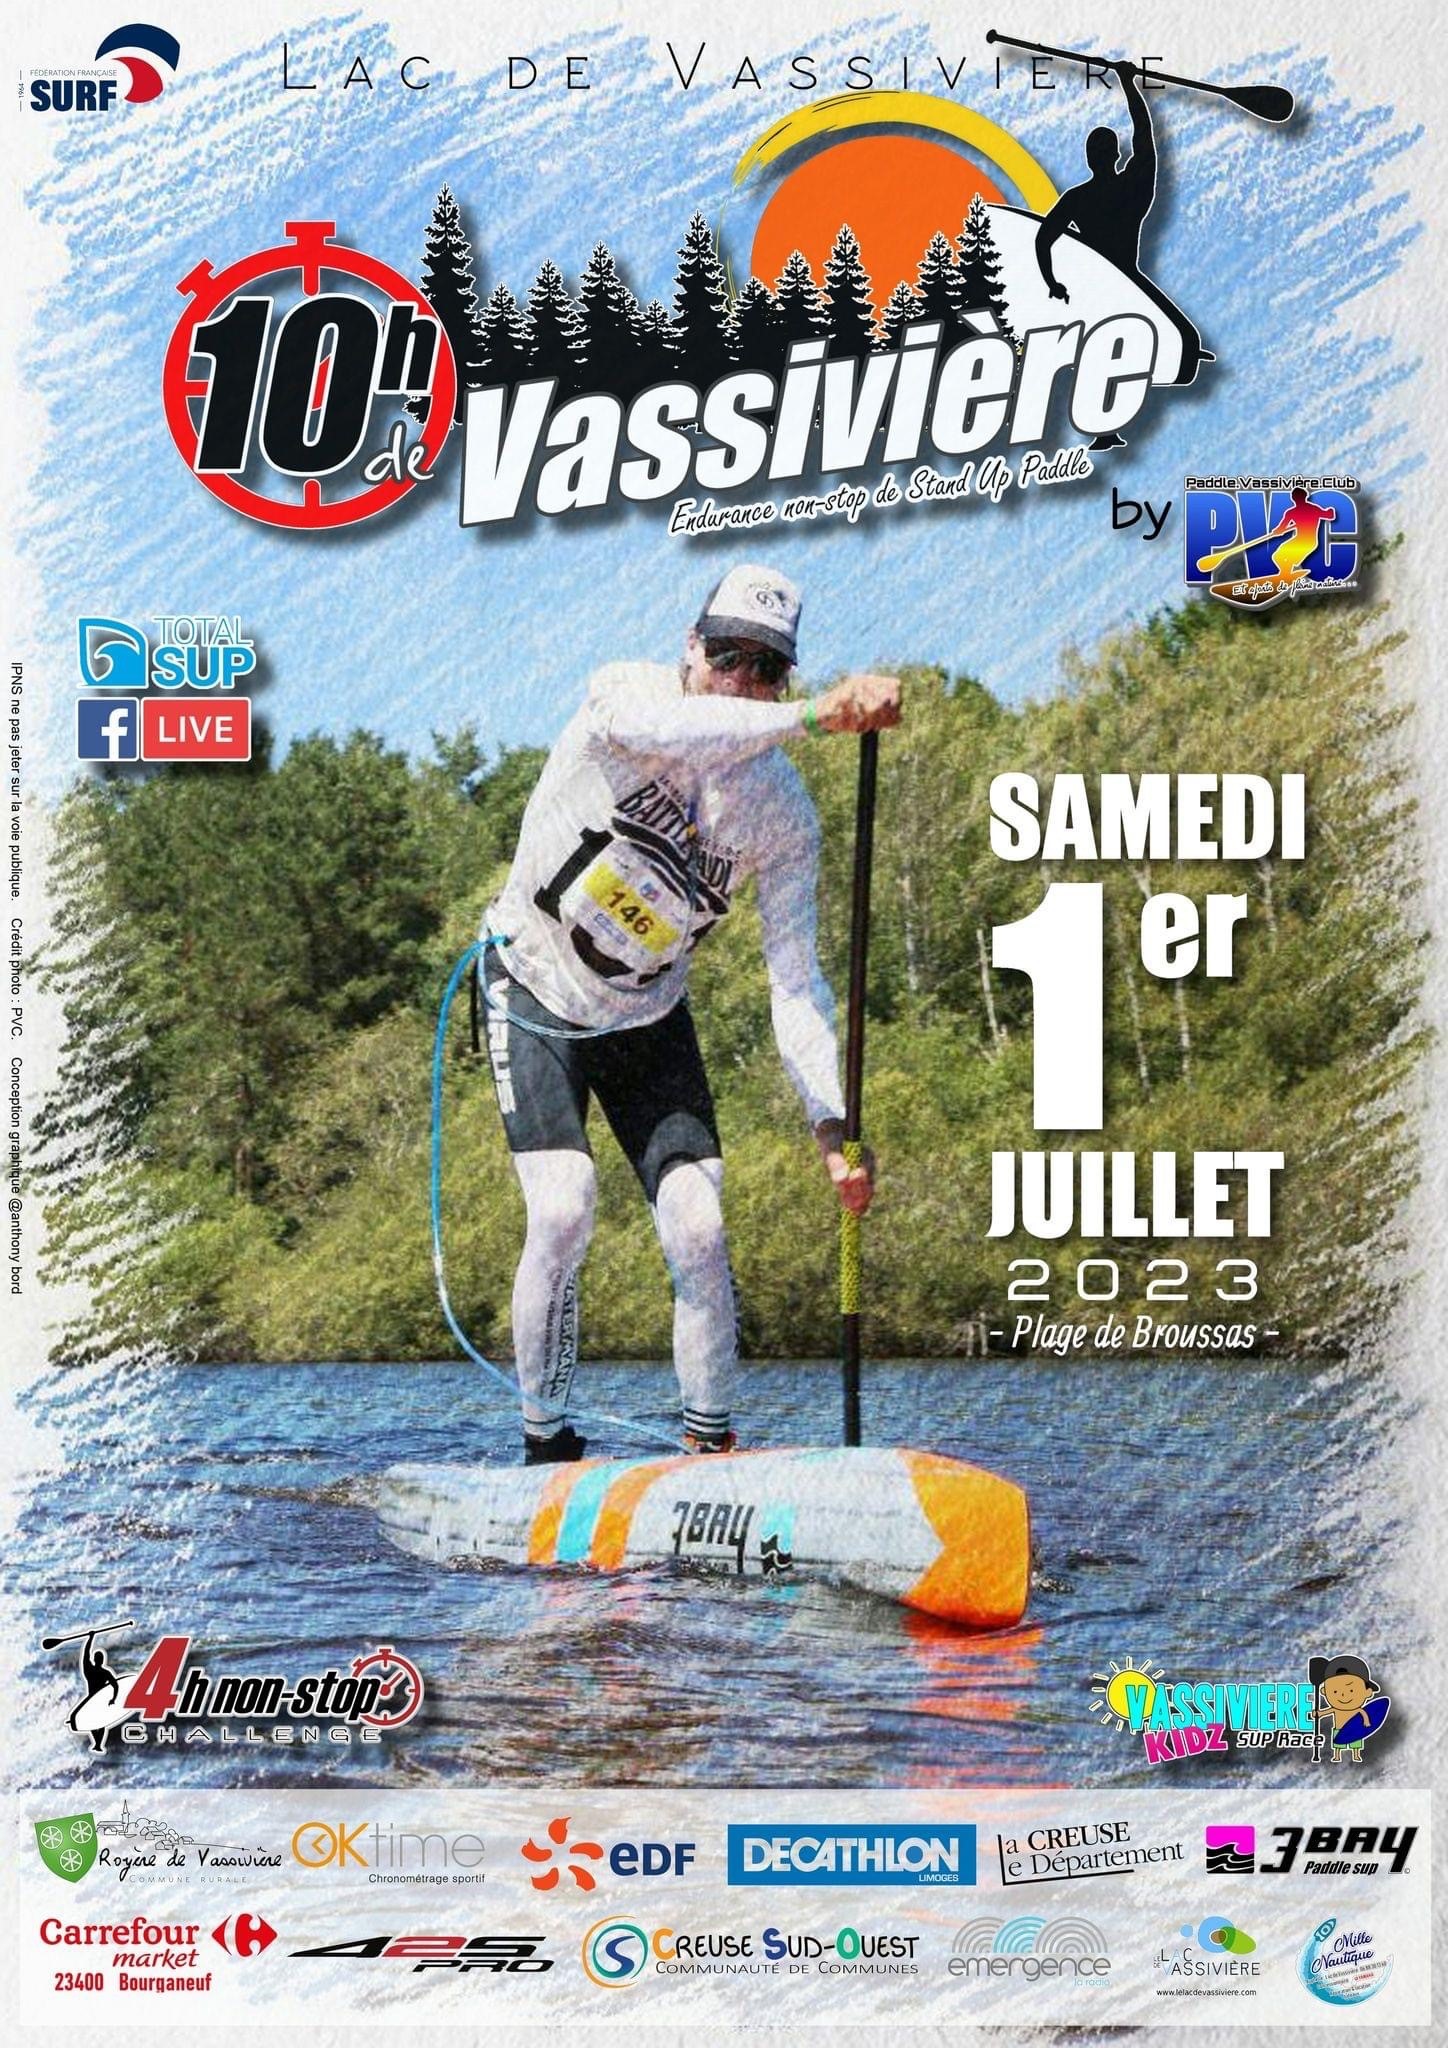 Les 10h de Vassivière : endurance paddle